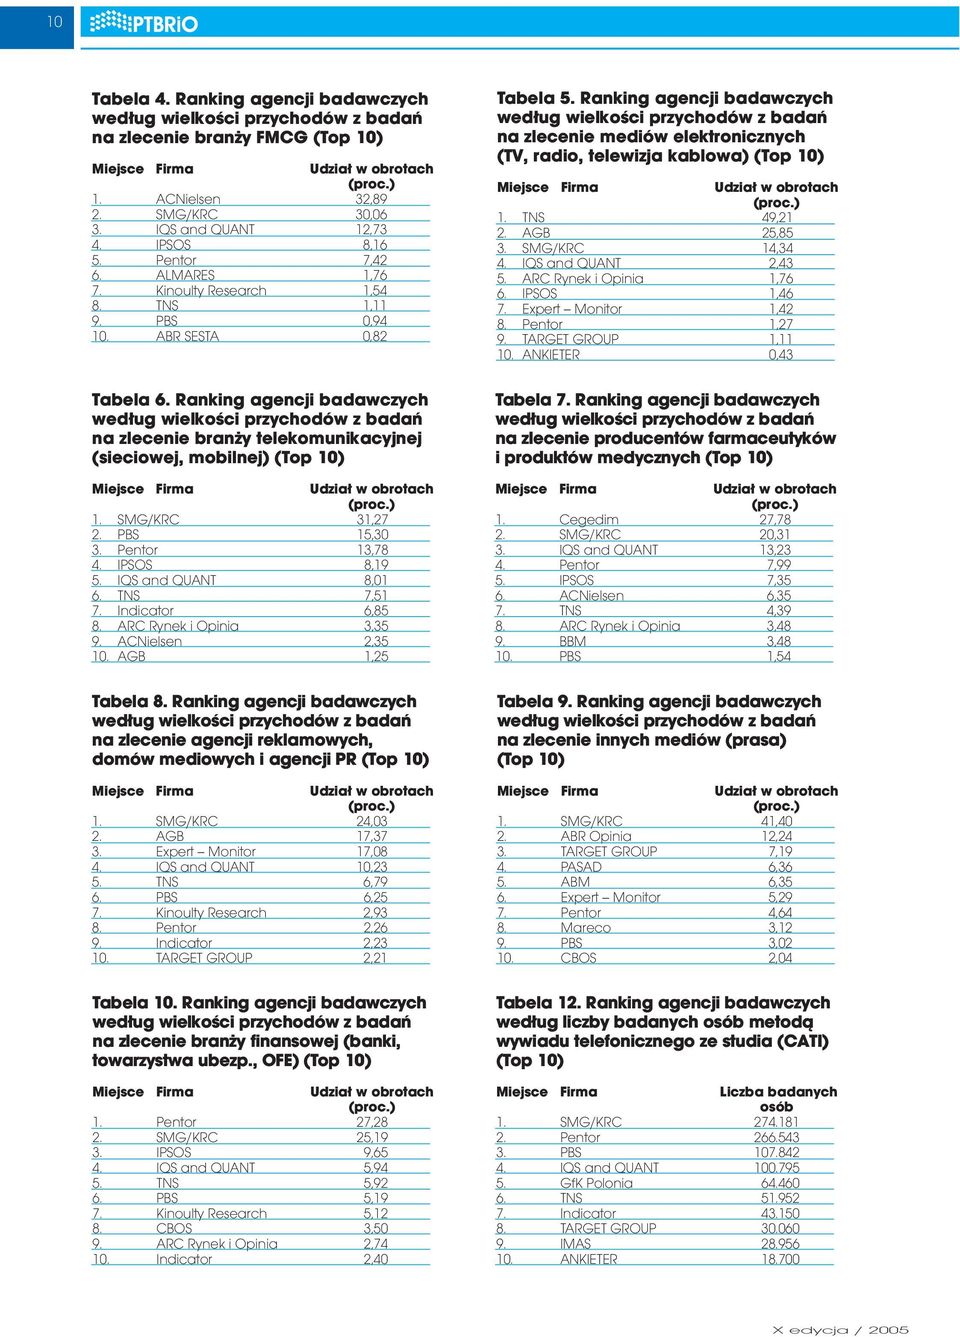 Ranking agencji badawczych według wielkości przychodów z badań na zlecenie mediów elektronicznych (TV, radio, telewizja kablowa) (Top 10) Miejsce Firma Udział w obrotach (proc.) 1. TNS 49,21 2.